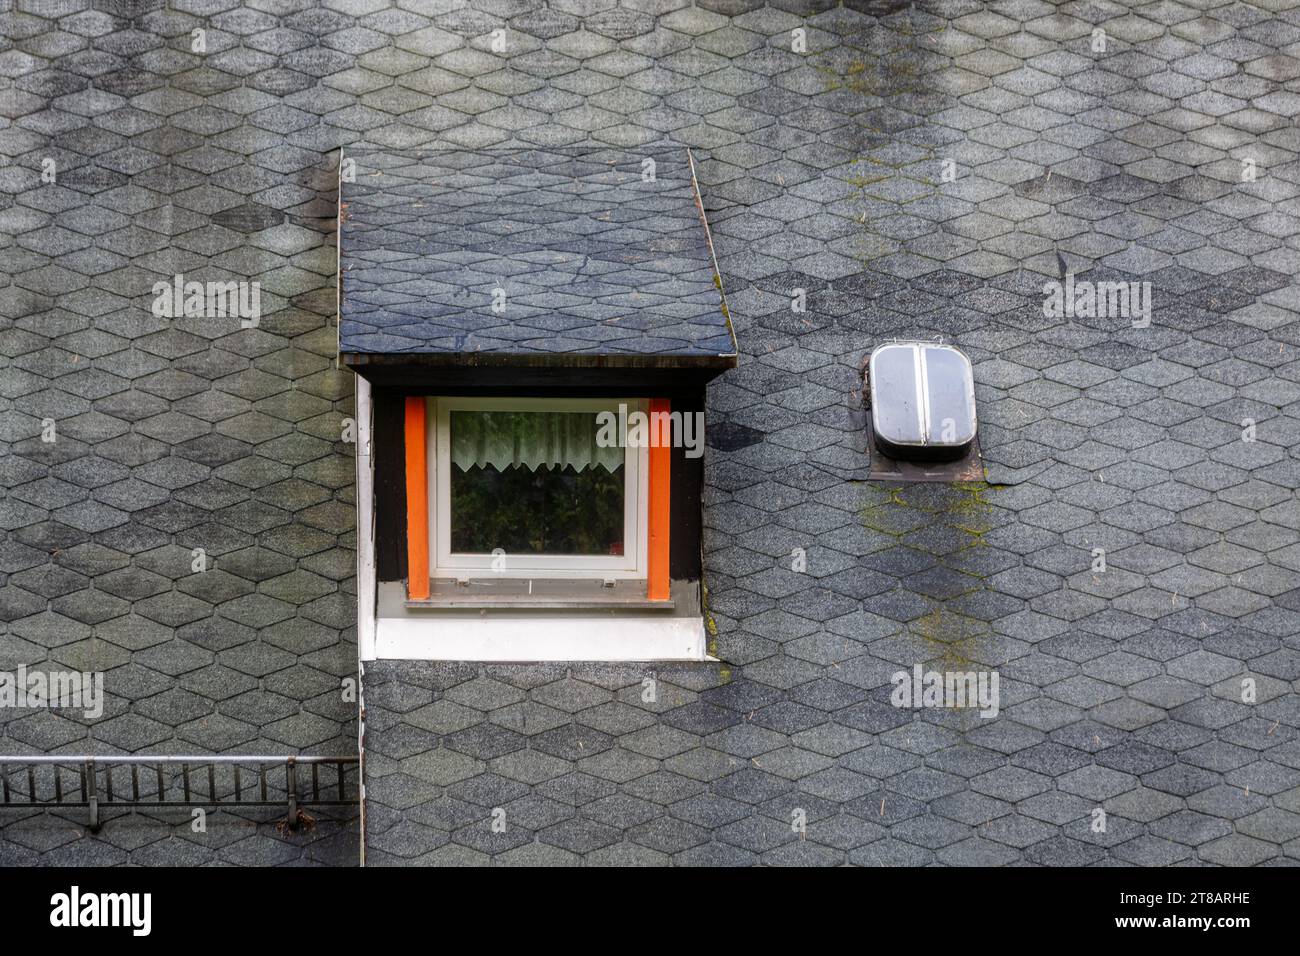 Fenêtre mezzanine rectangulaire sur le toit de la maison avec tuiles grises flexibles. Des fenêtres du monde fenêtre mezzanine rectangulaire sur le toit Banque D'Images